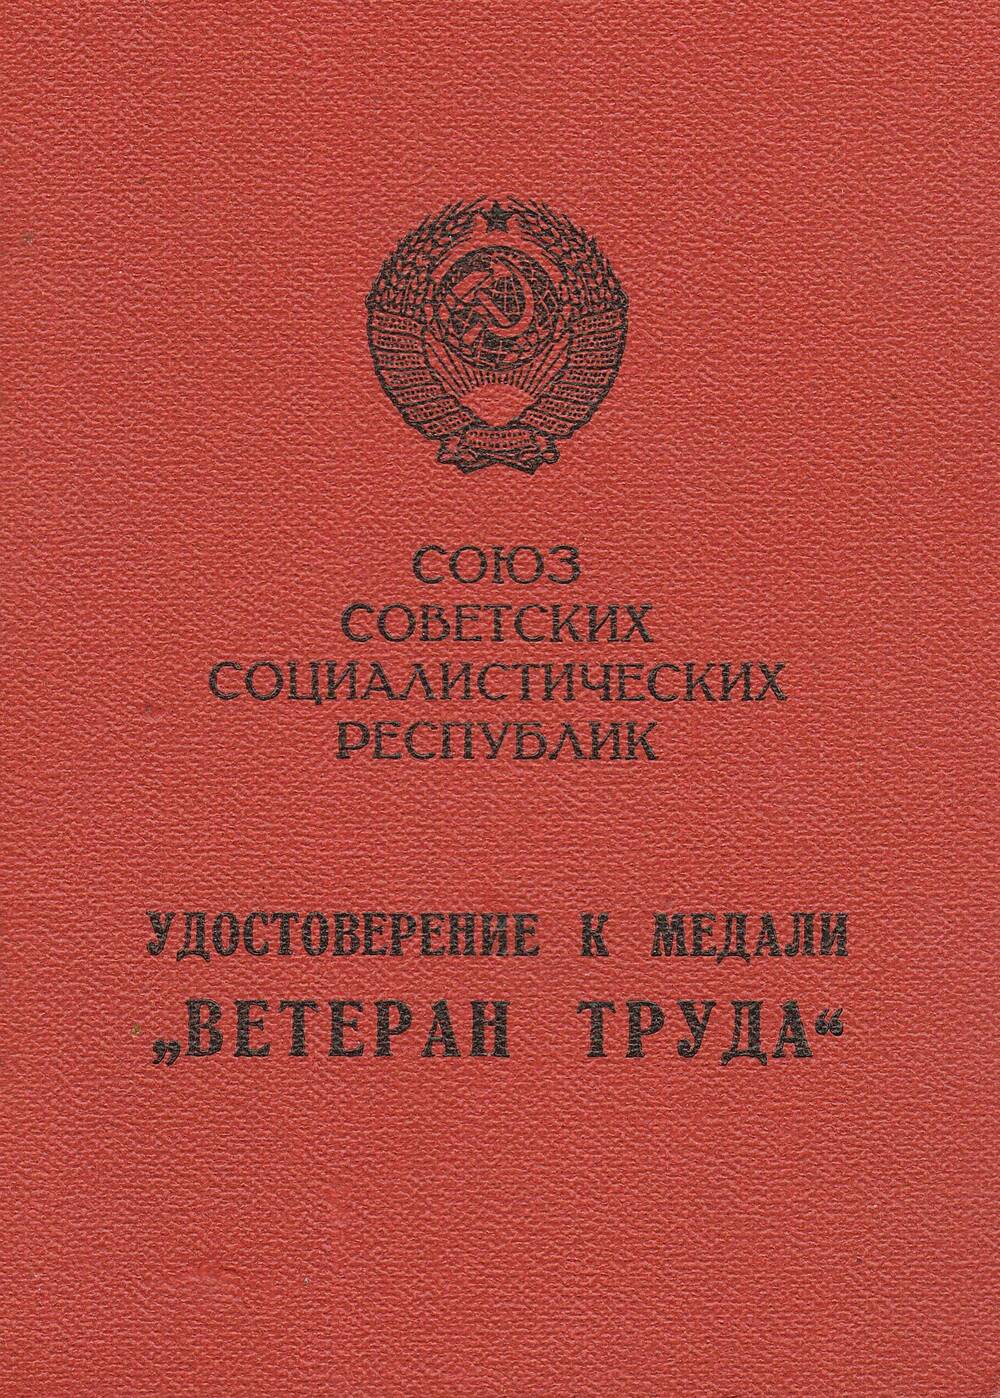 Удостоверение к медали «Ветеран труда» Борейко В.П.